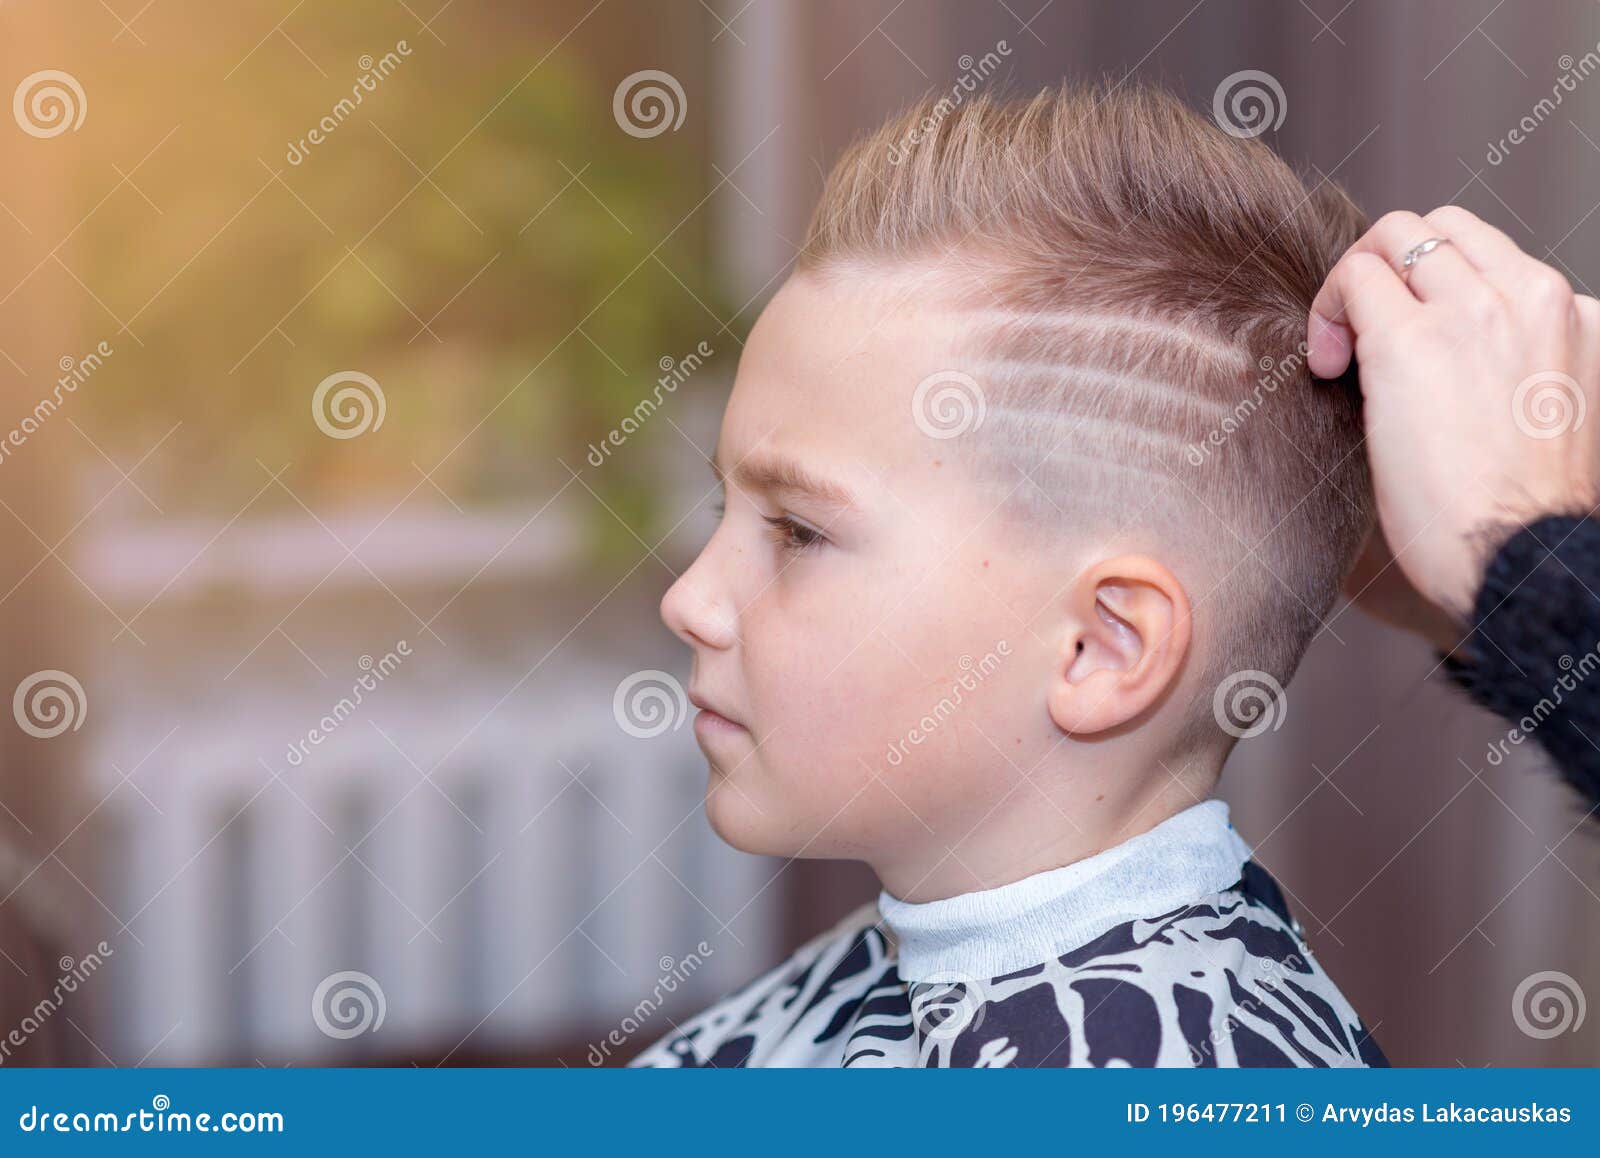 European Haircuts For Men 2023 Trends  Crop haircut Trending haircuts  Crop hair